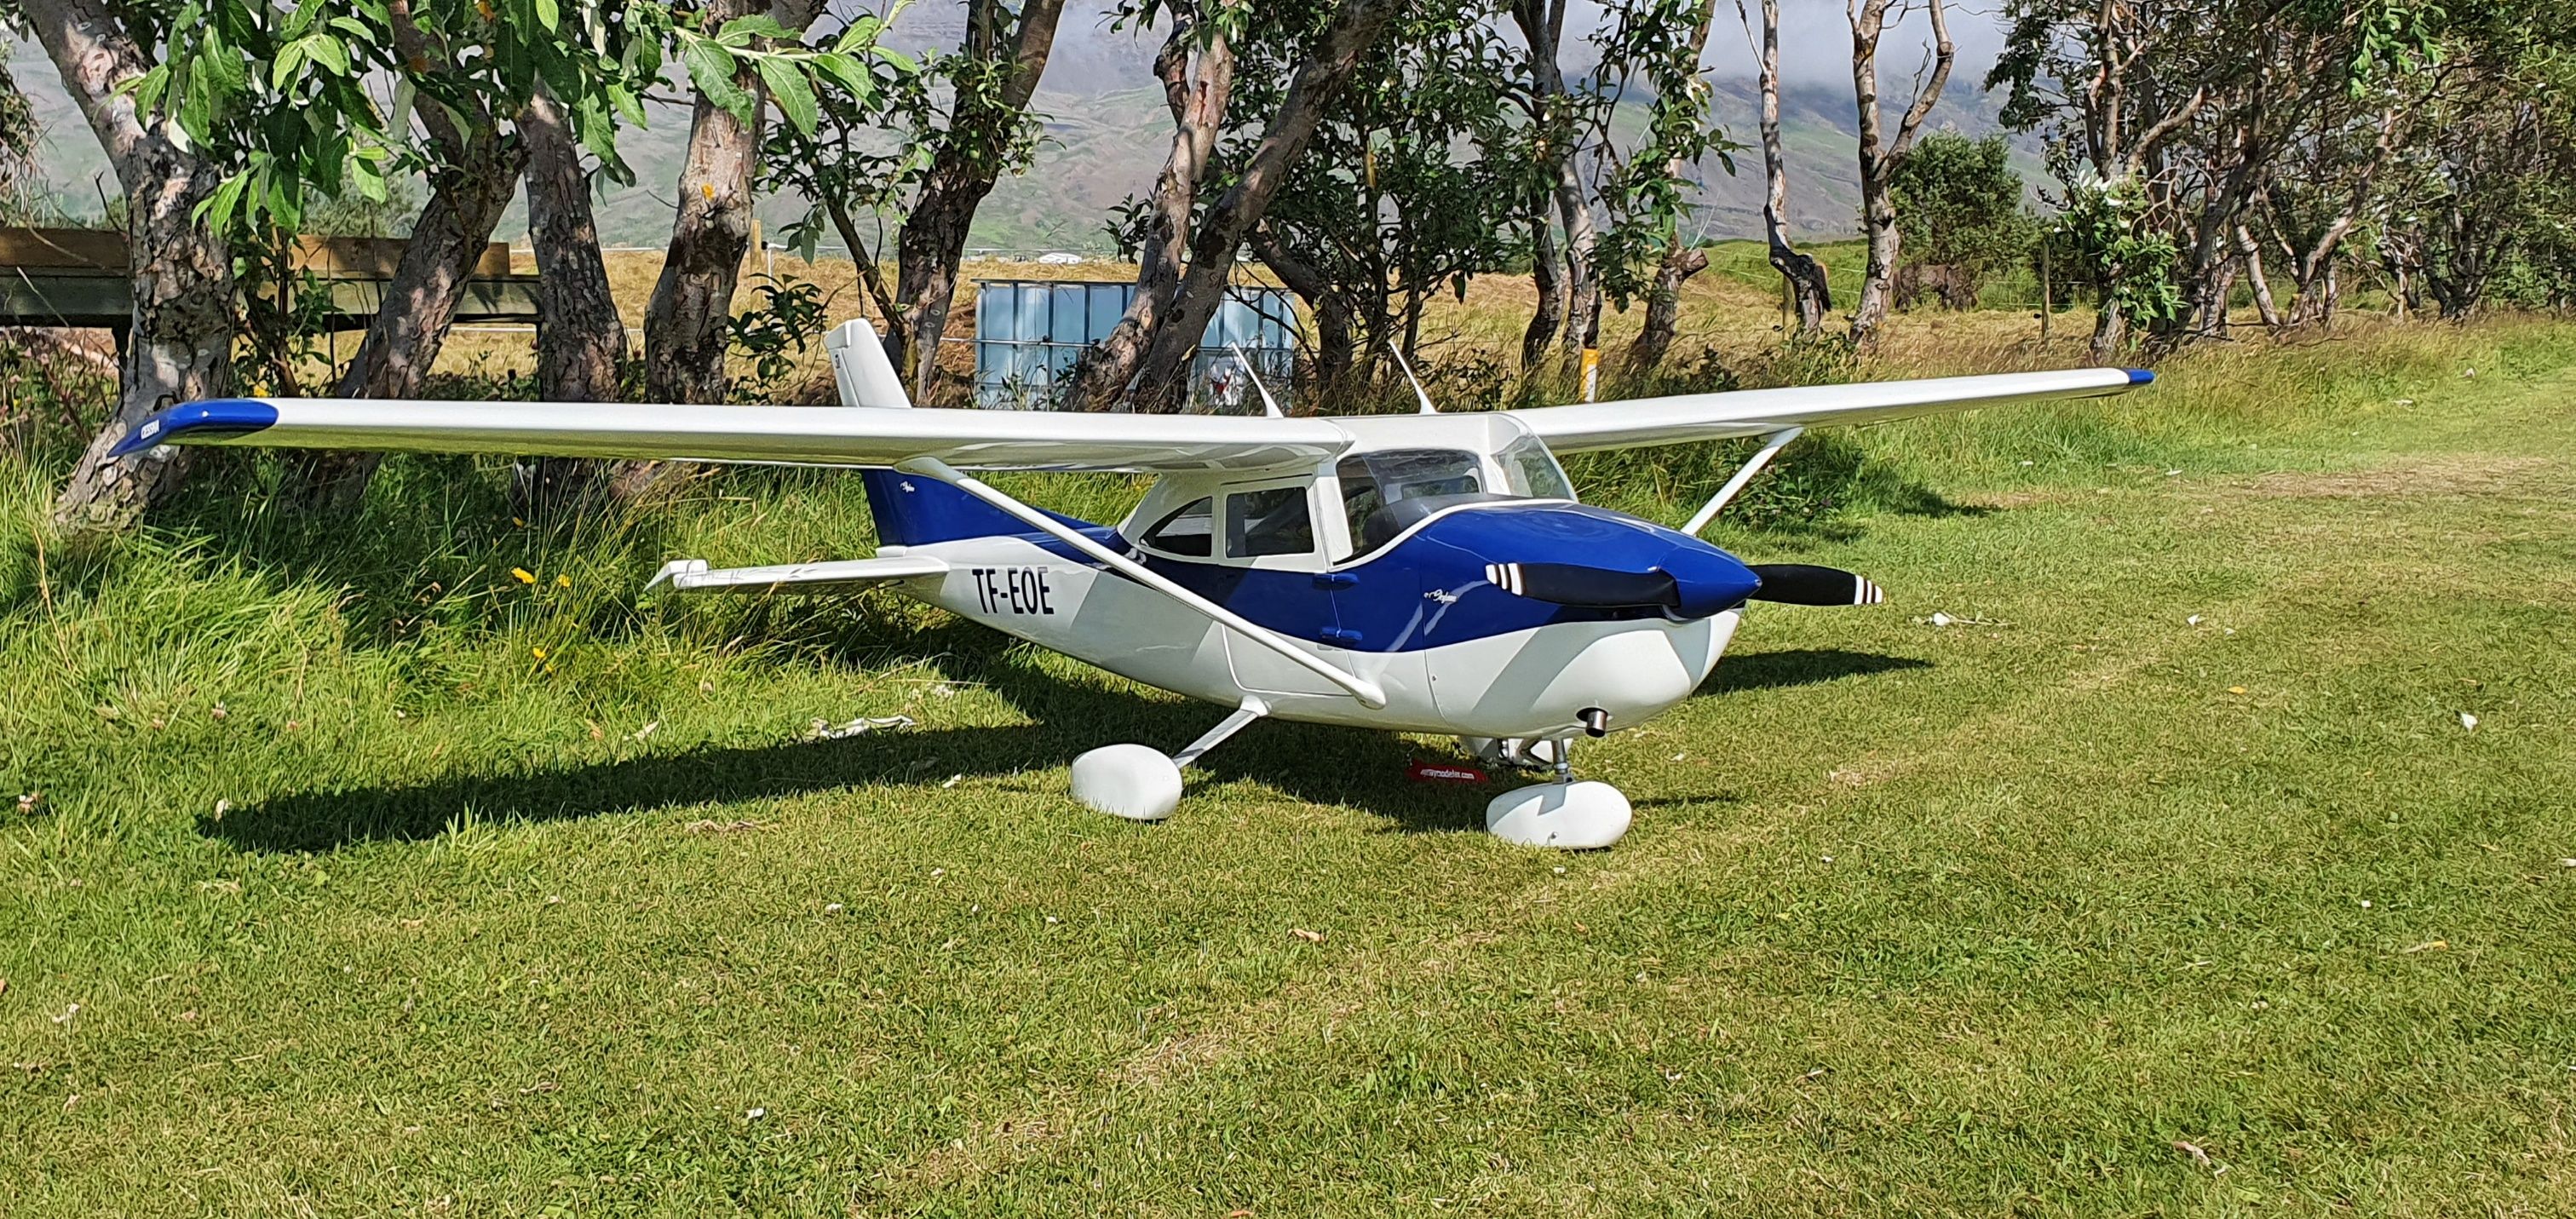 26% Cessna 182 Parts Set for Hostetler plans